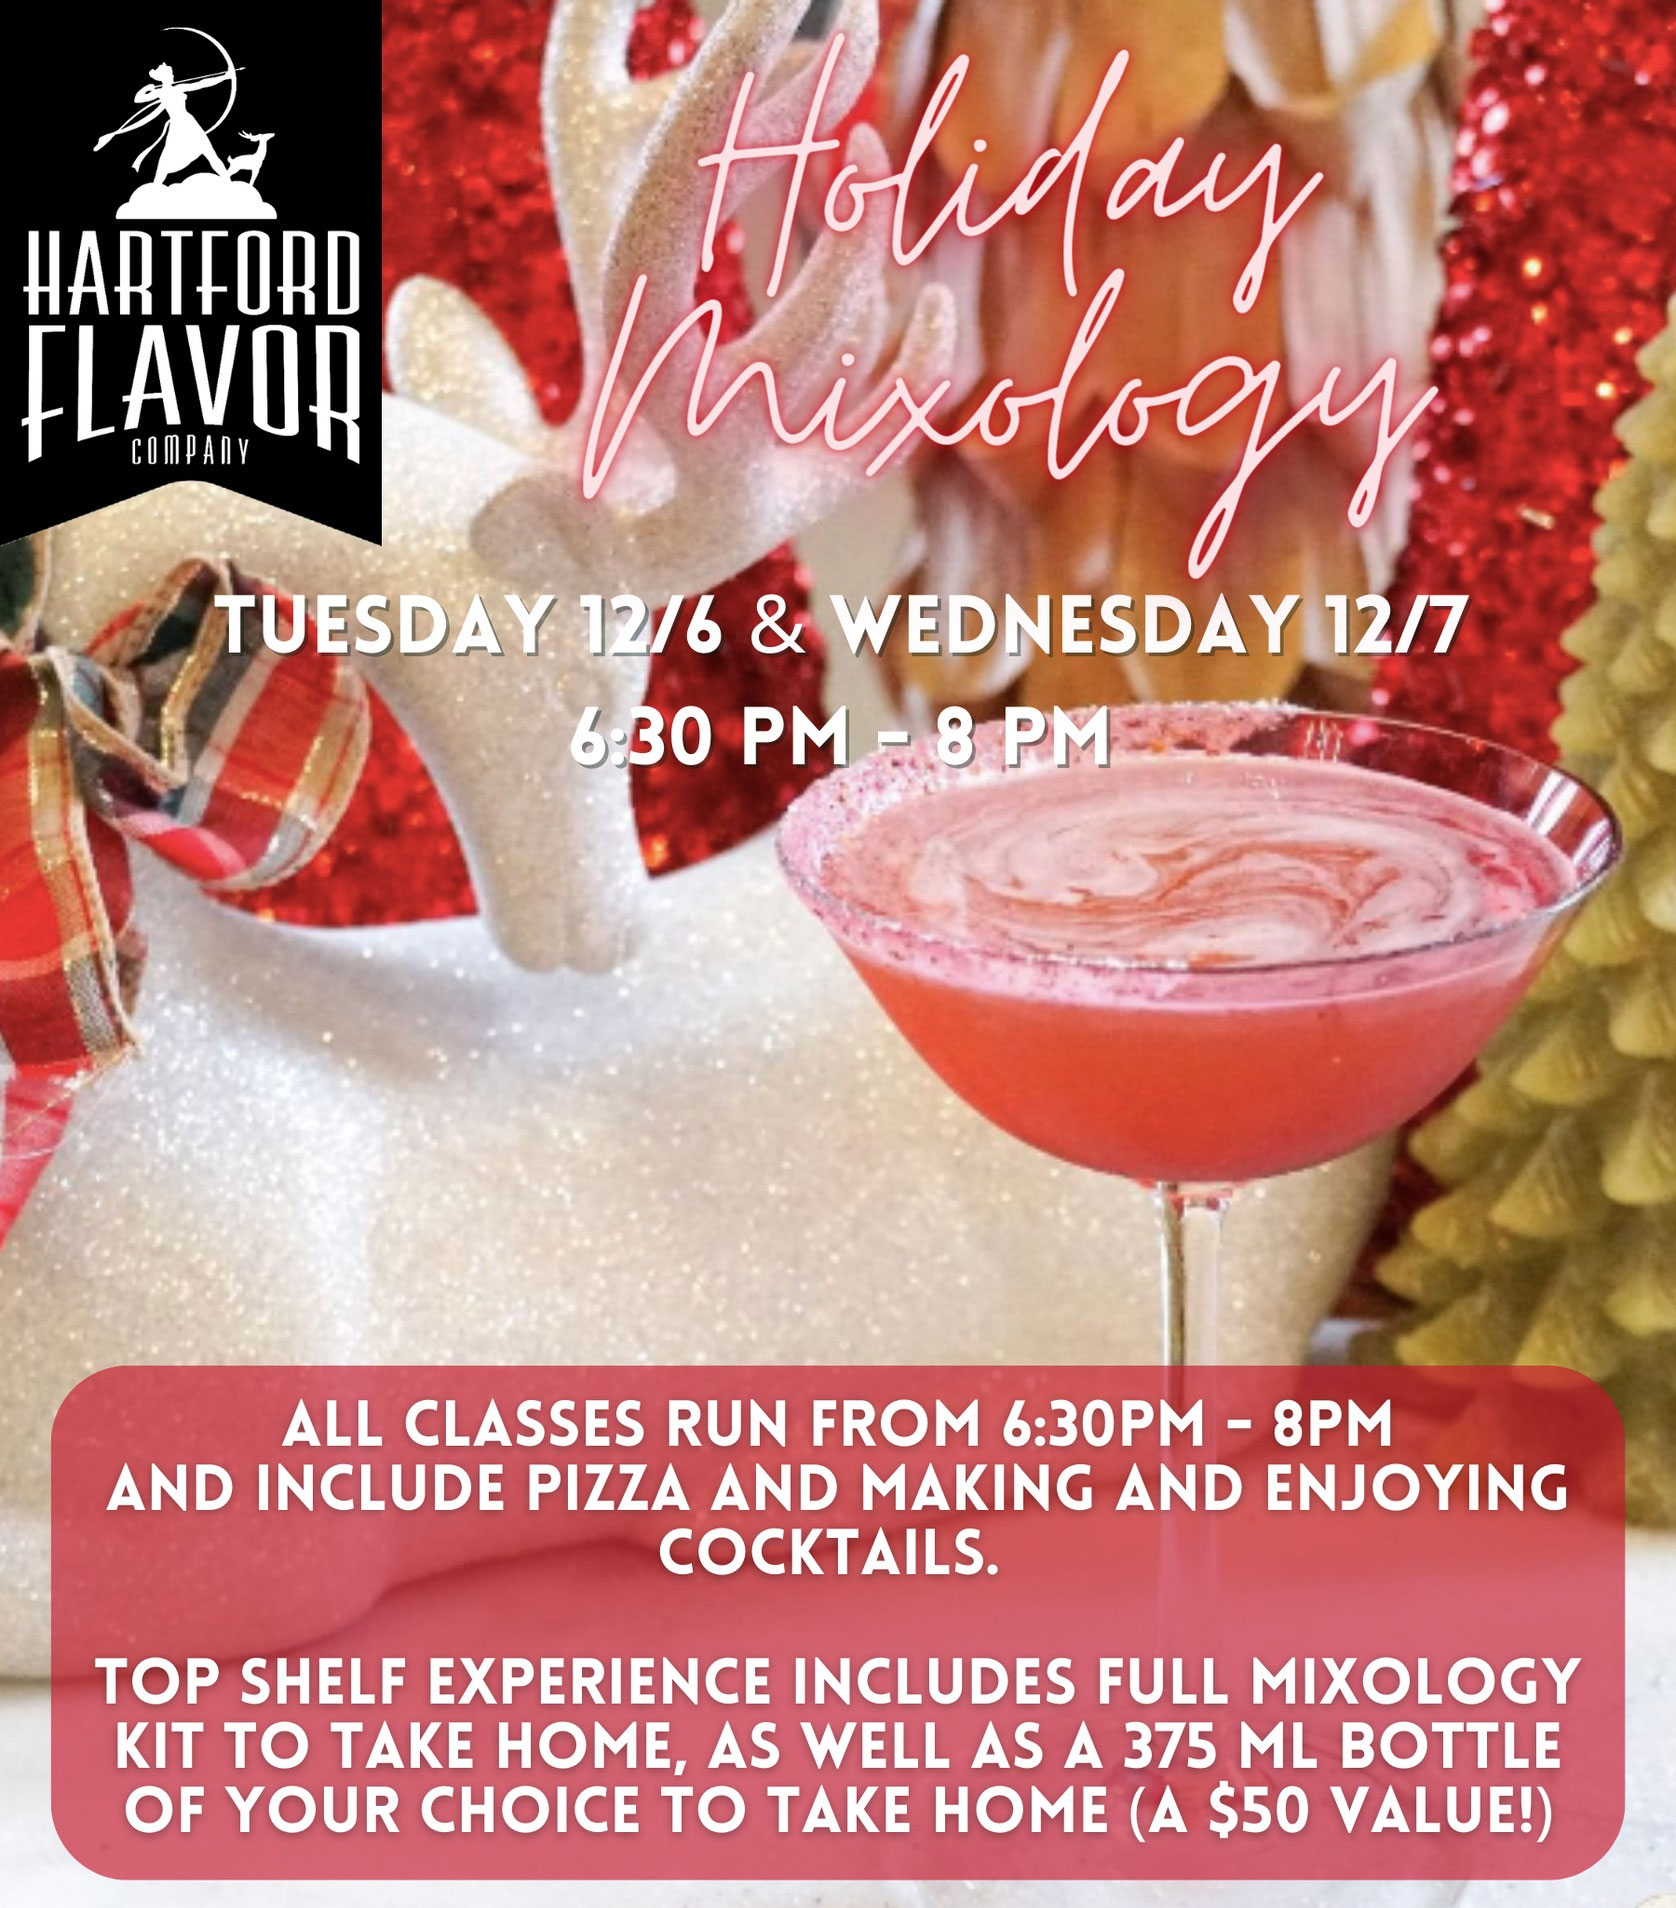 Hartford Flavor's Mixology Classes